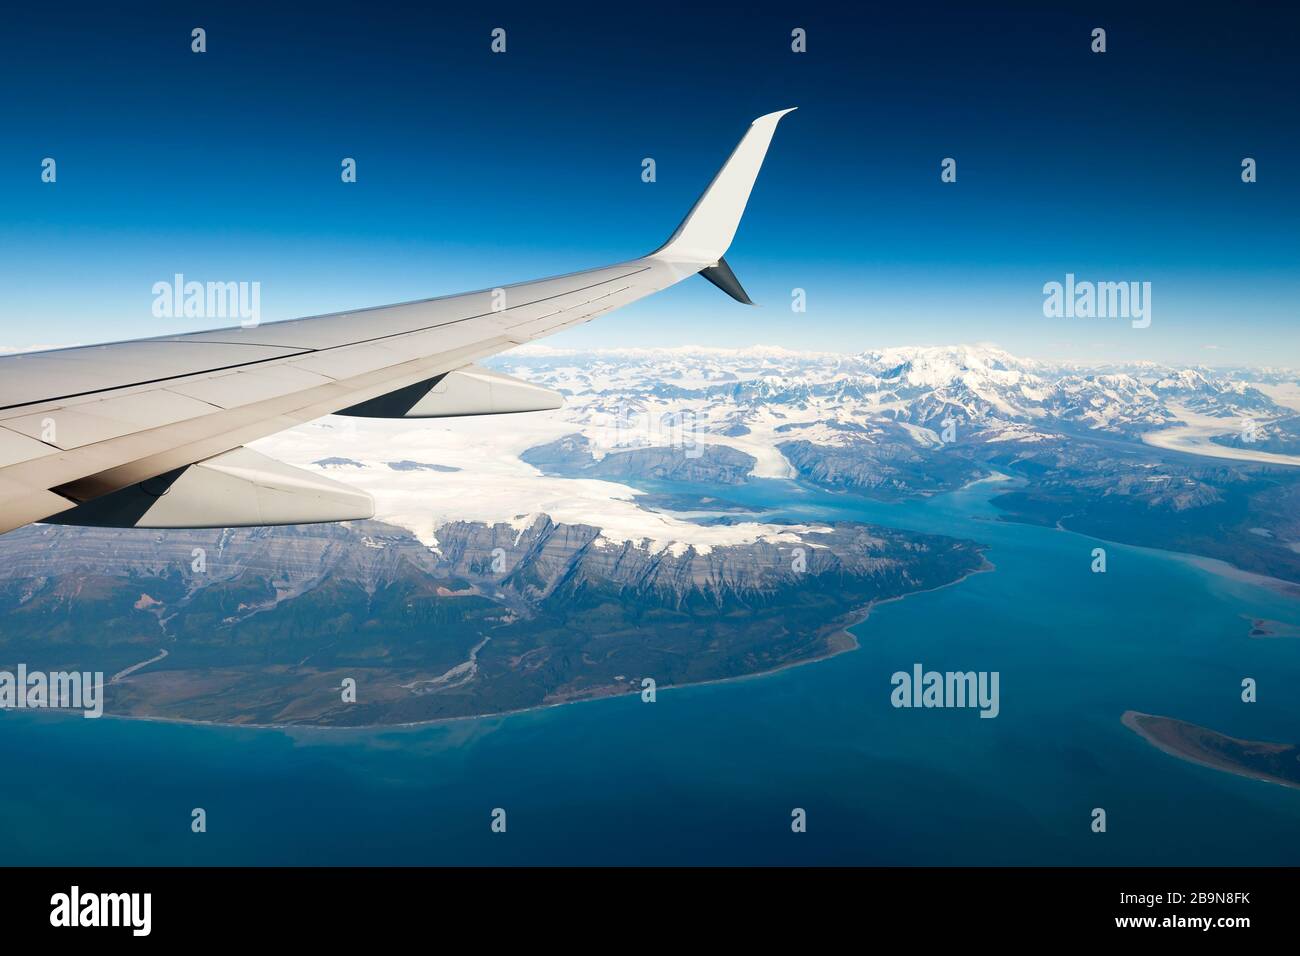 Blick auf den Flugzeugflügel mit schneebedeckten Bergen in einer kalten Umgebung. An Bord eines Milk Run Flugs, zwischen zwei kleinen Städten im US-Bundesstaat Alaska. Stockfoto